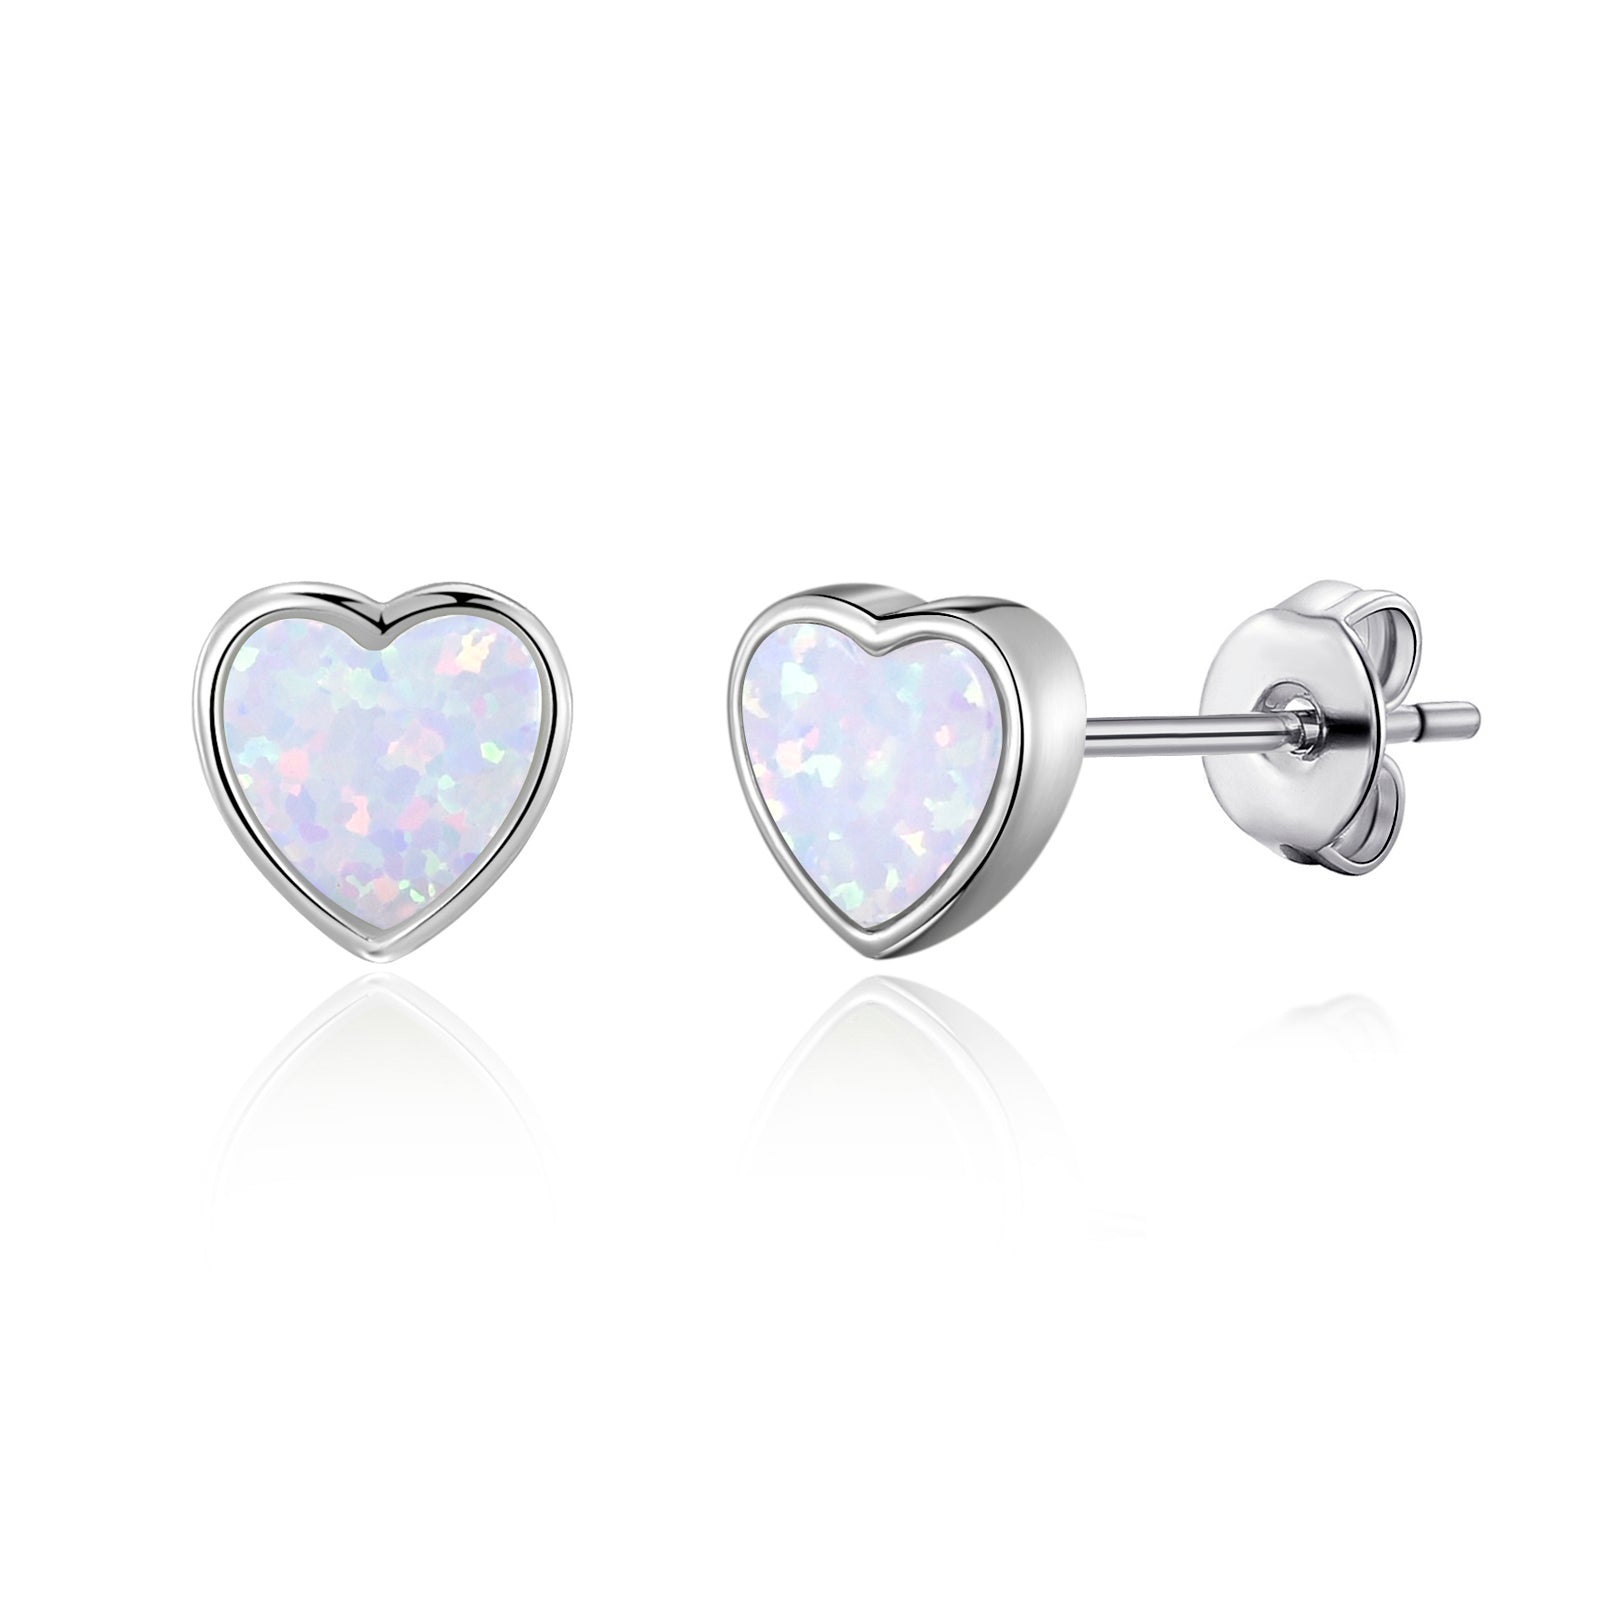 Synthetic White Opal Heart Stud Earrings